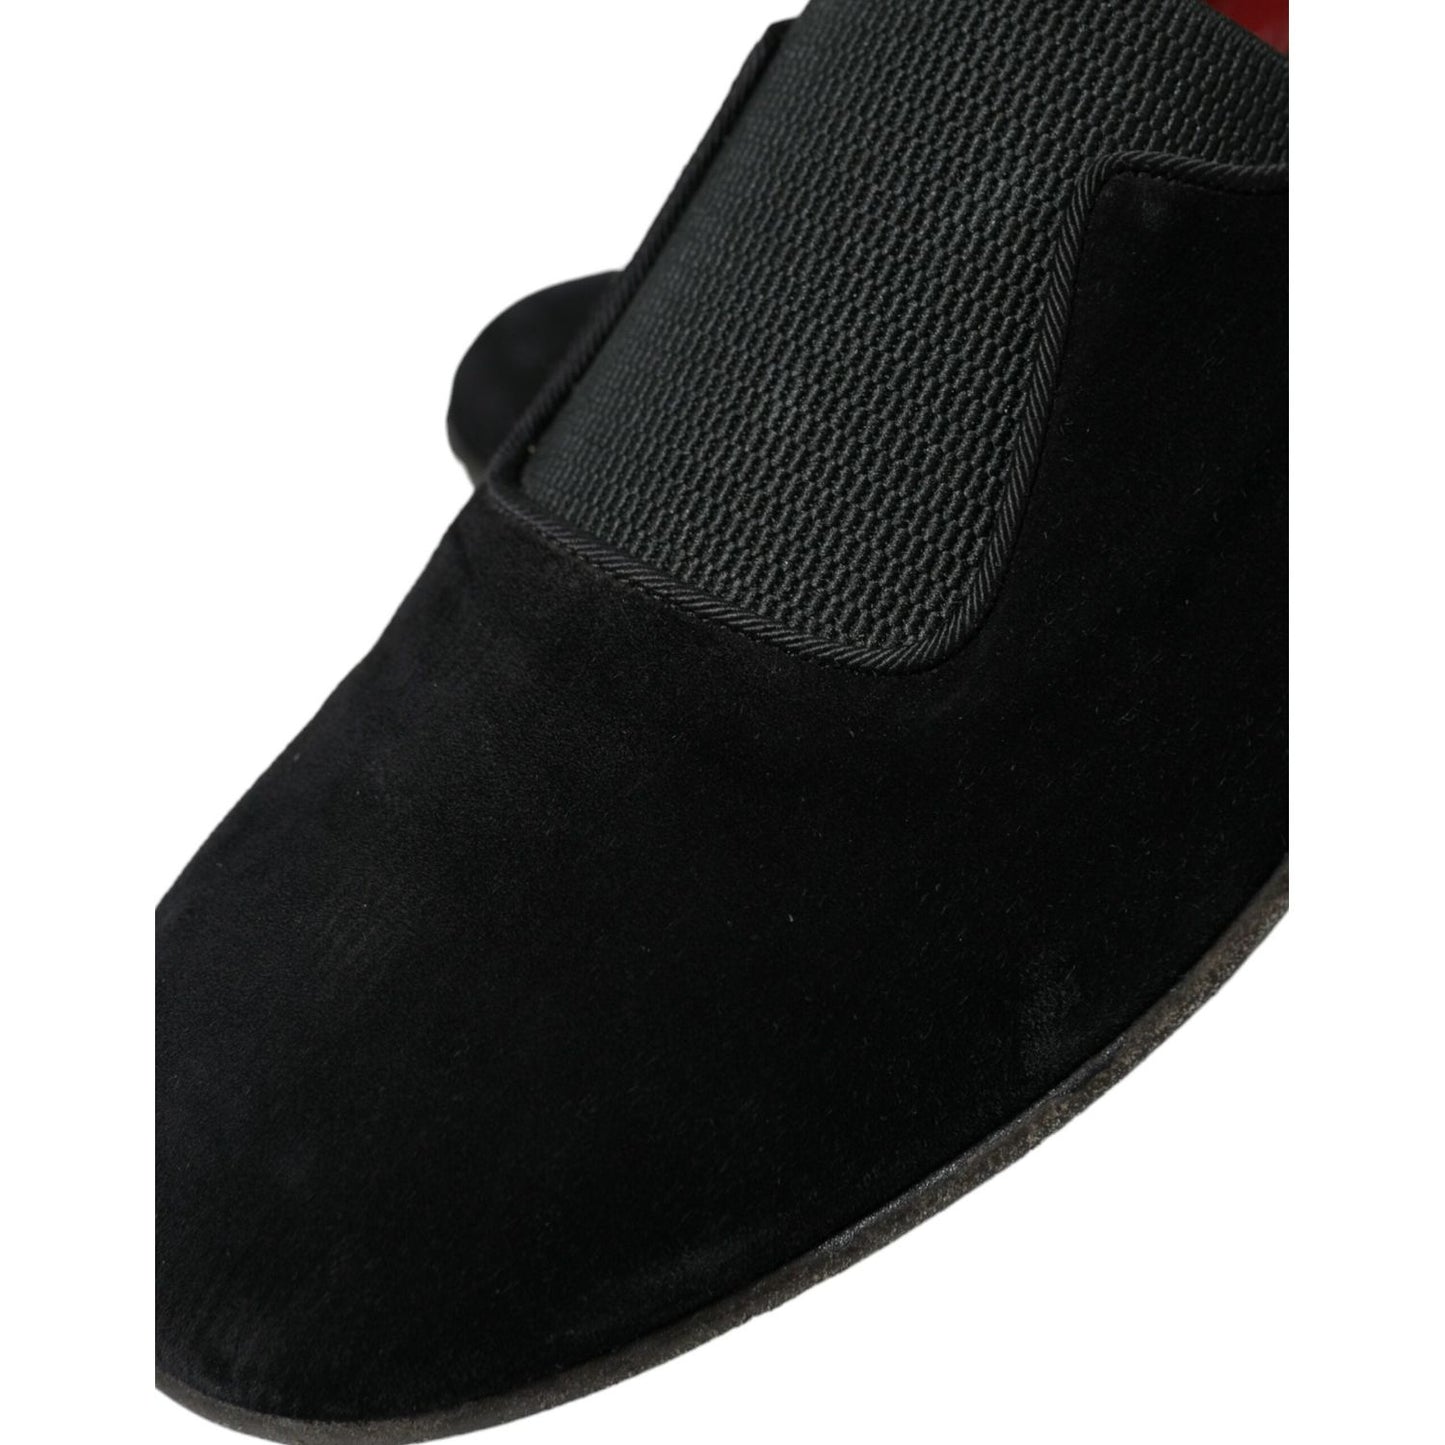 Dolce & Gabbana Elegant Black Velor Loafers for the Discerning Gentleman black-runway-velour-amalfi-loafers-shoes